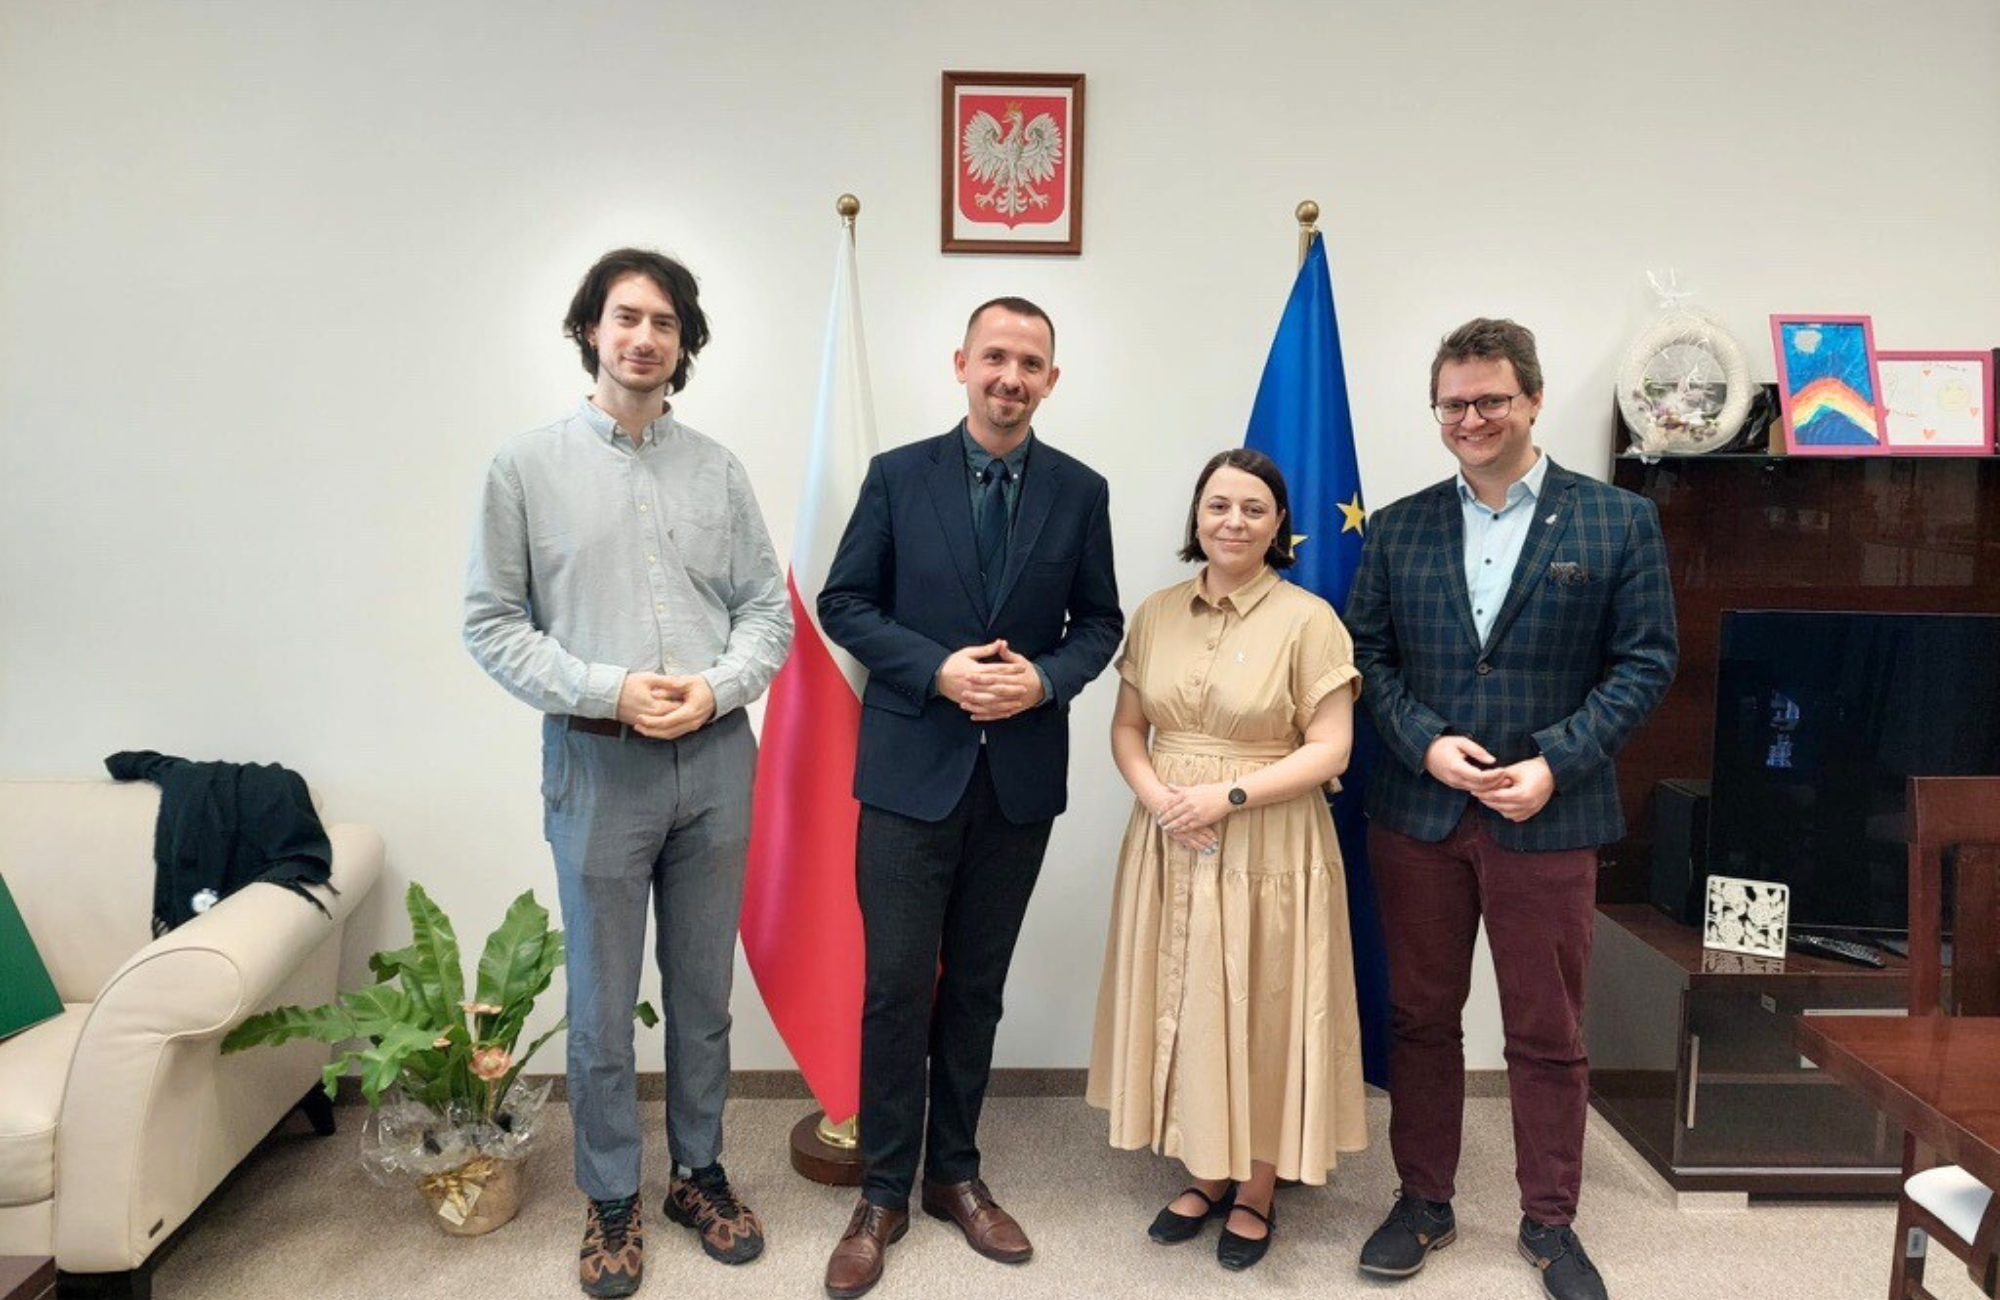 Zdjęcie elegancko ubranych osób - trzech mężczyzn i jednej kobiety. W tle flaga Polski i flaga Unii Europejskiej. Na jasnej ścianie godło Polski.